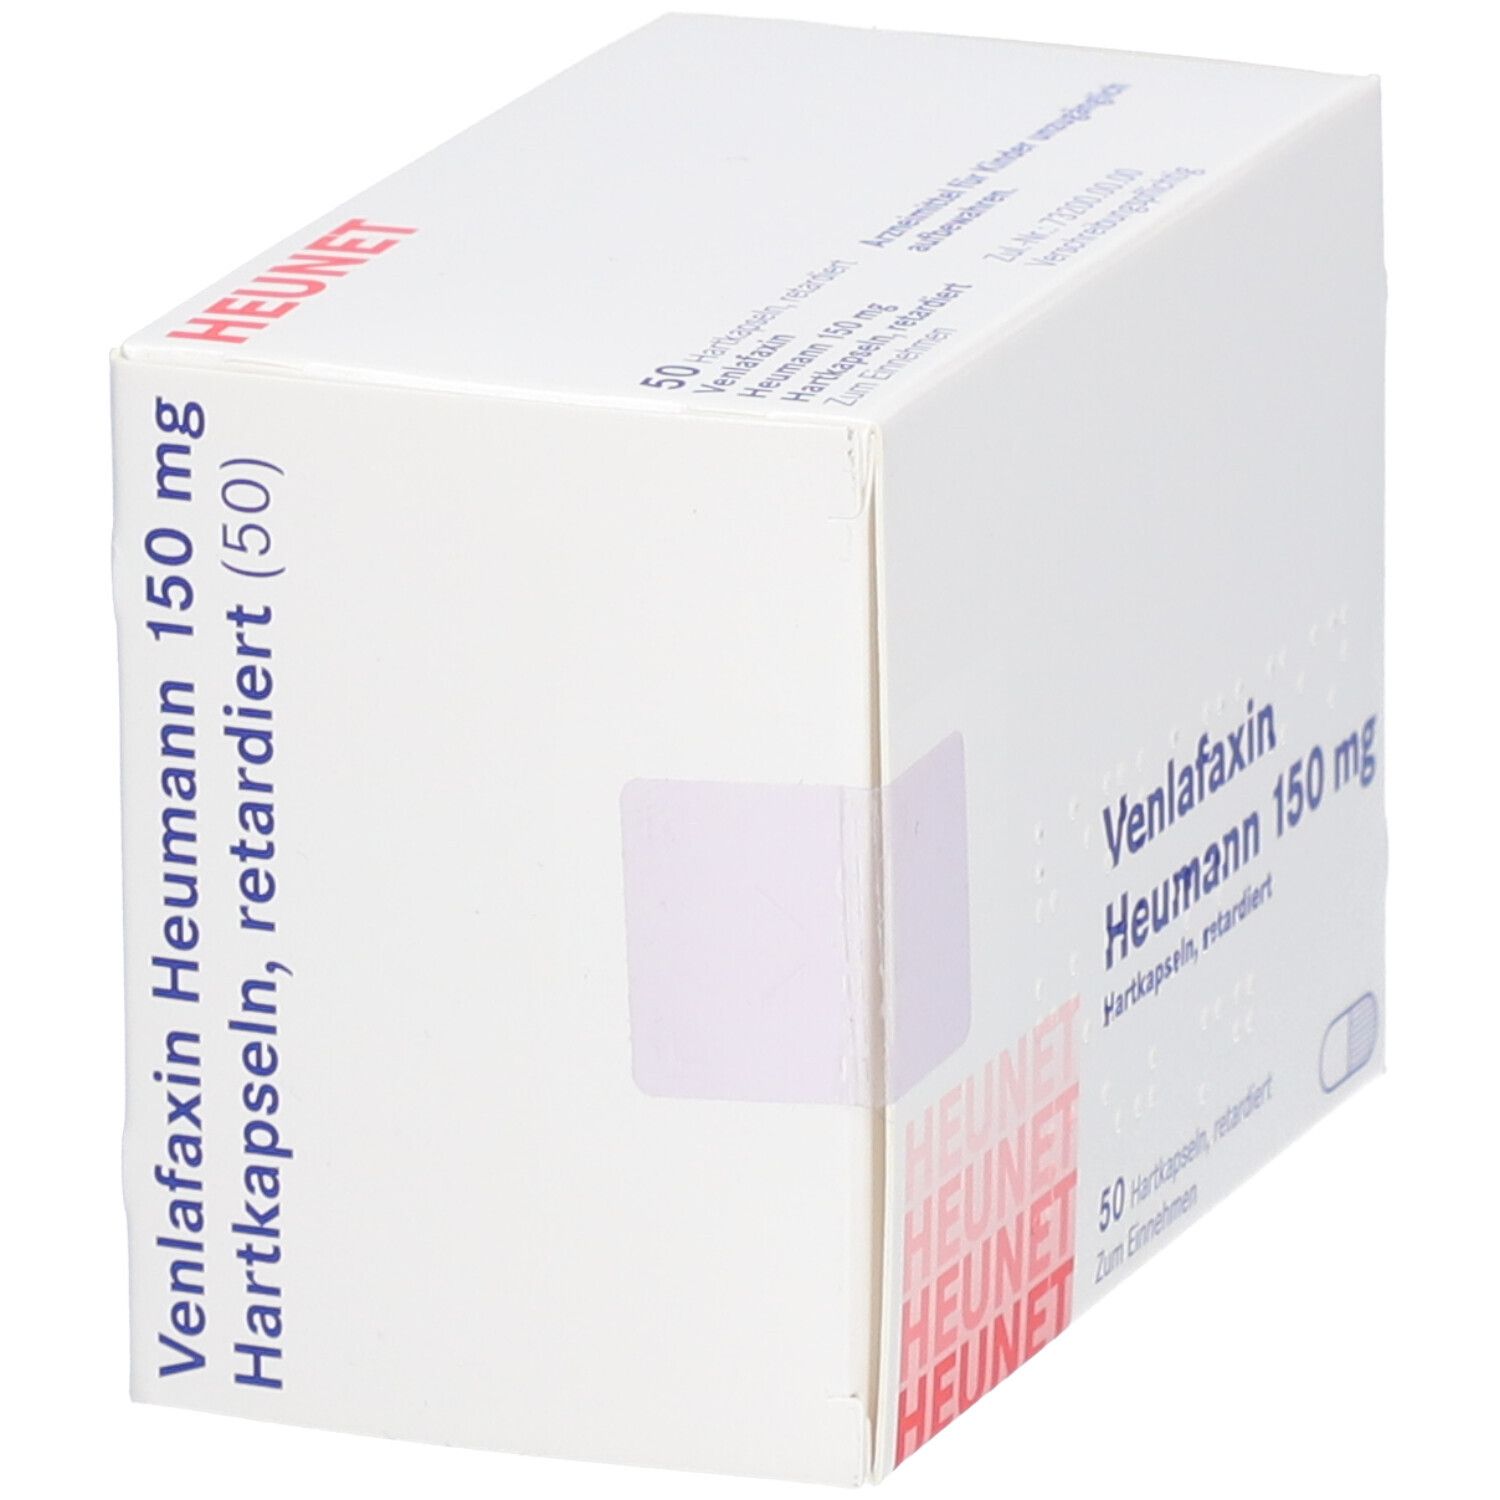 Venlafaxin Heumann 150 mg